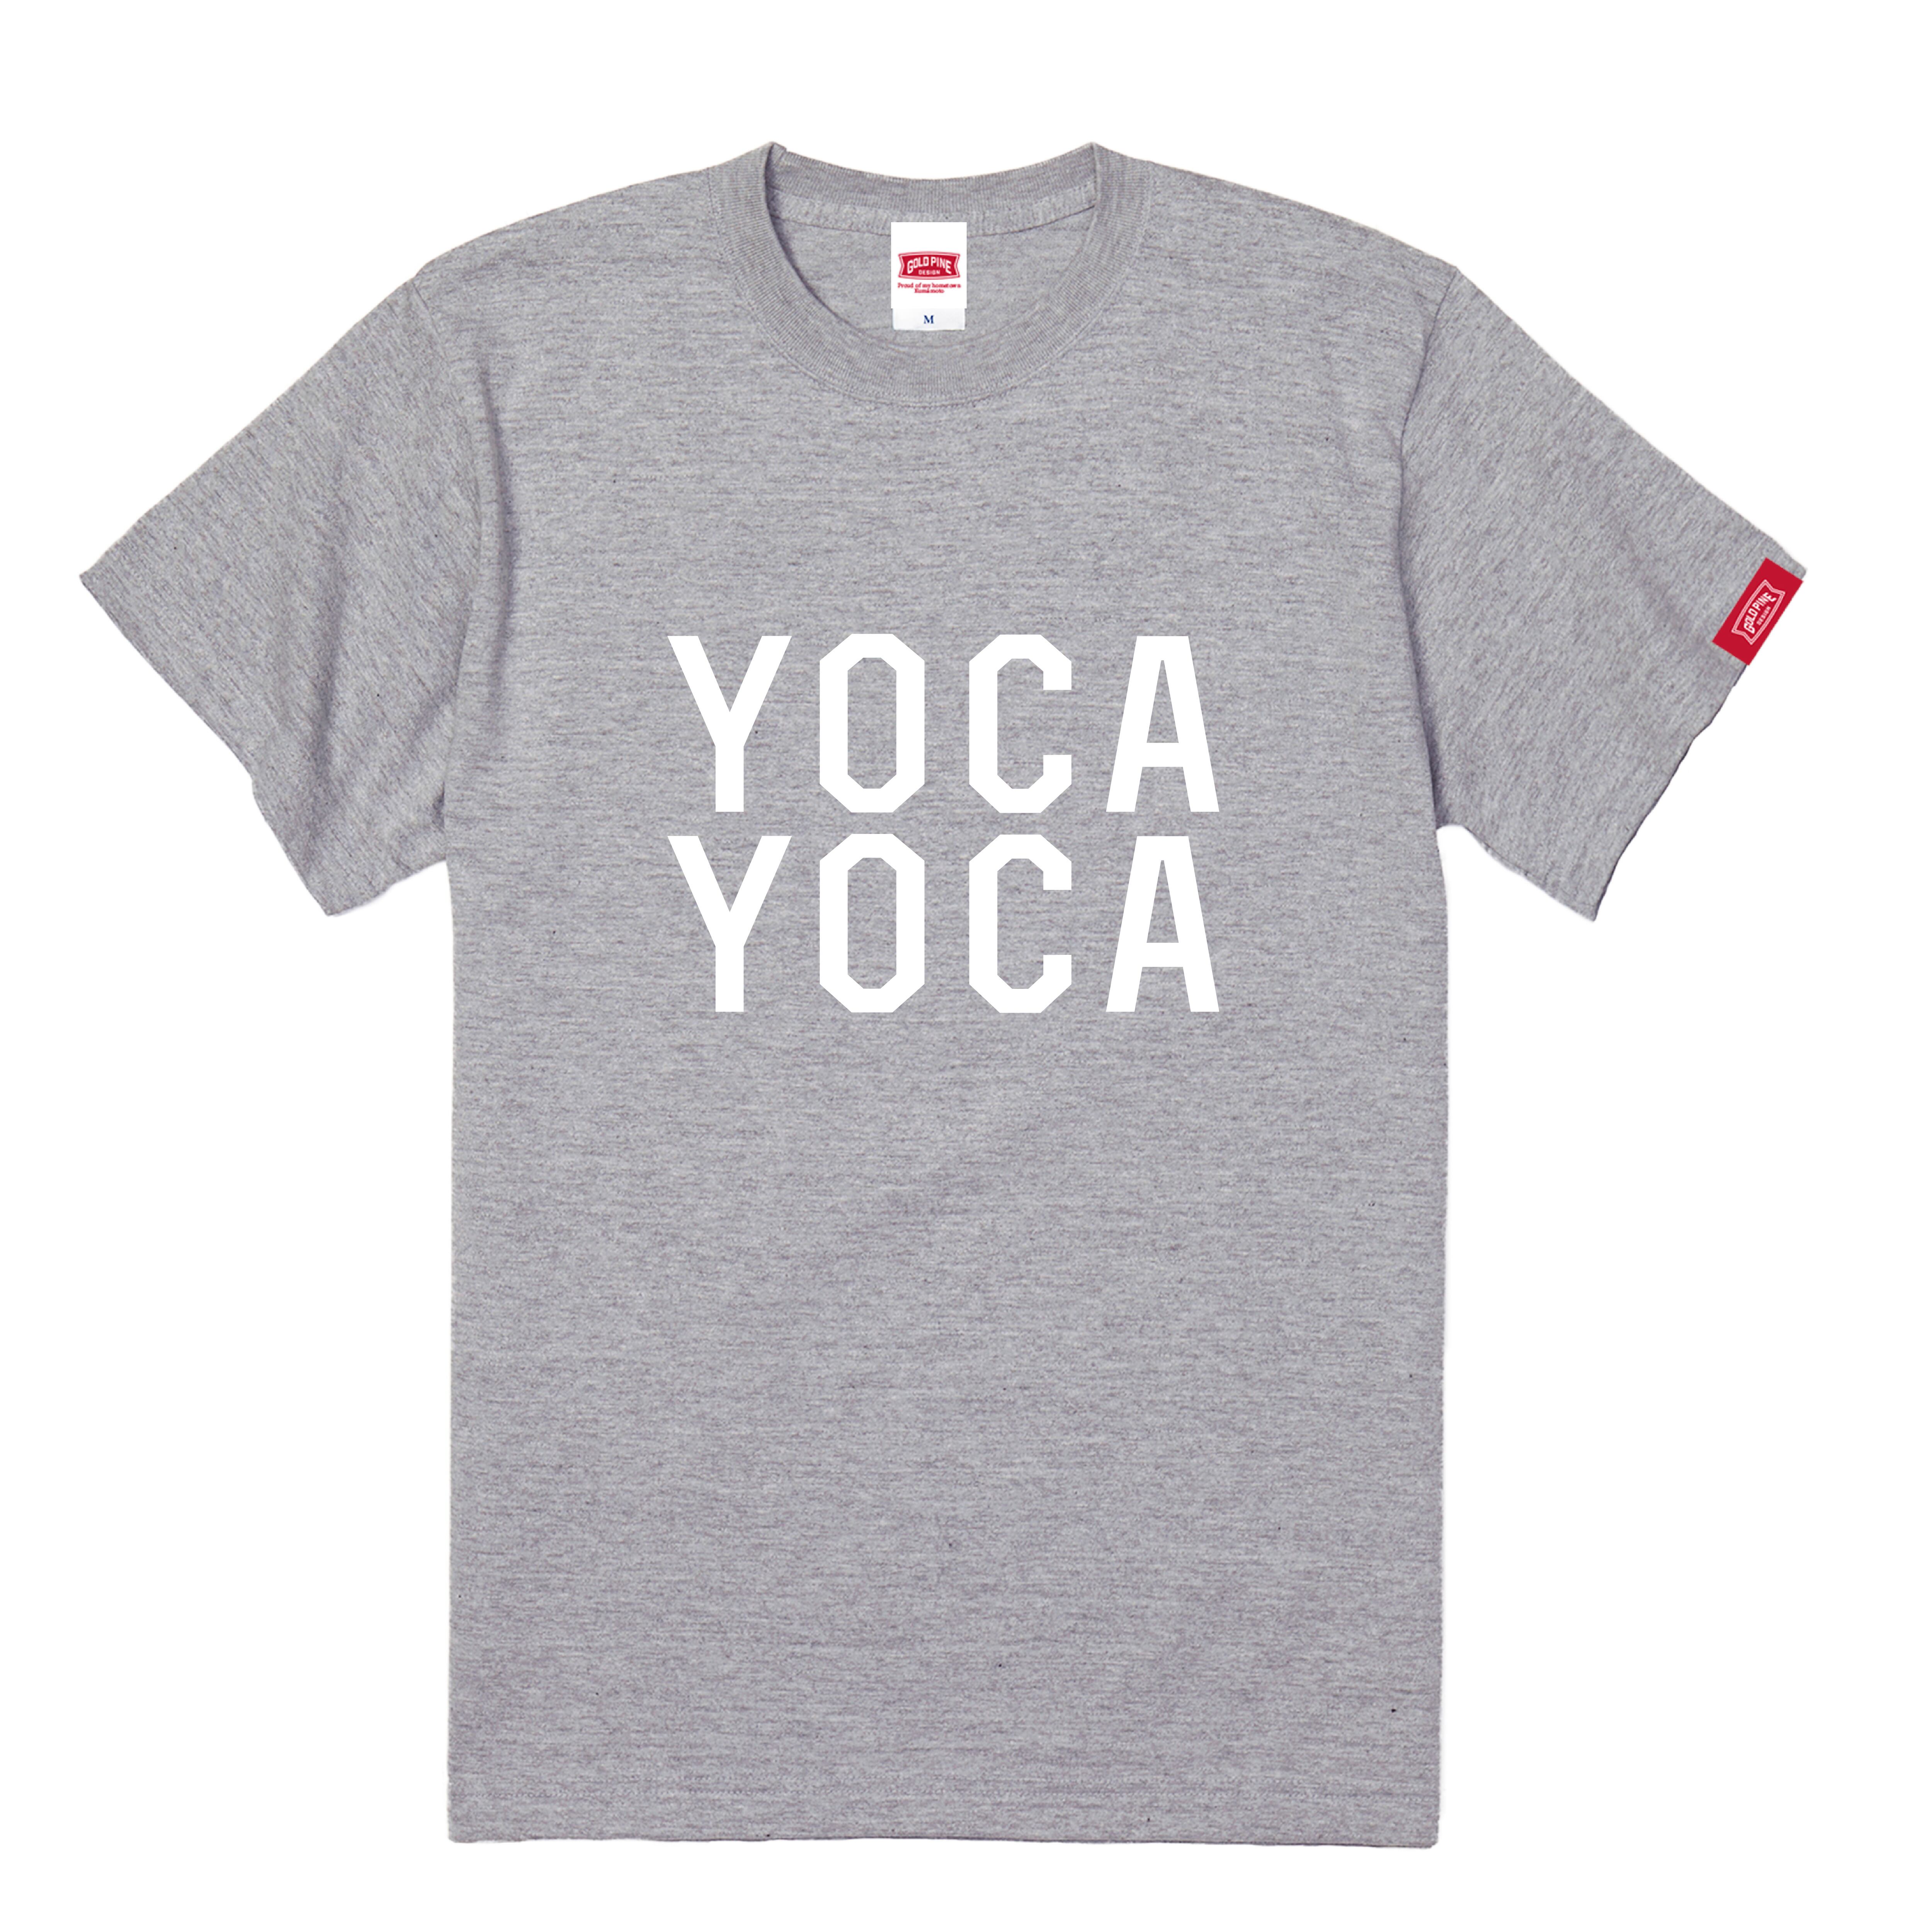 YOCAYOCA-Tshirt【Adult】Gray